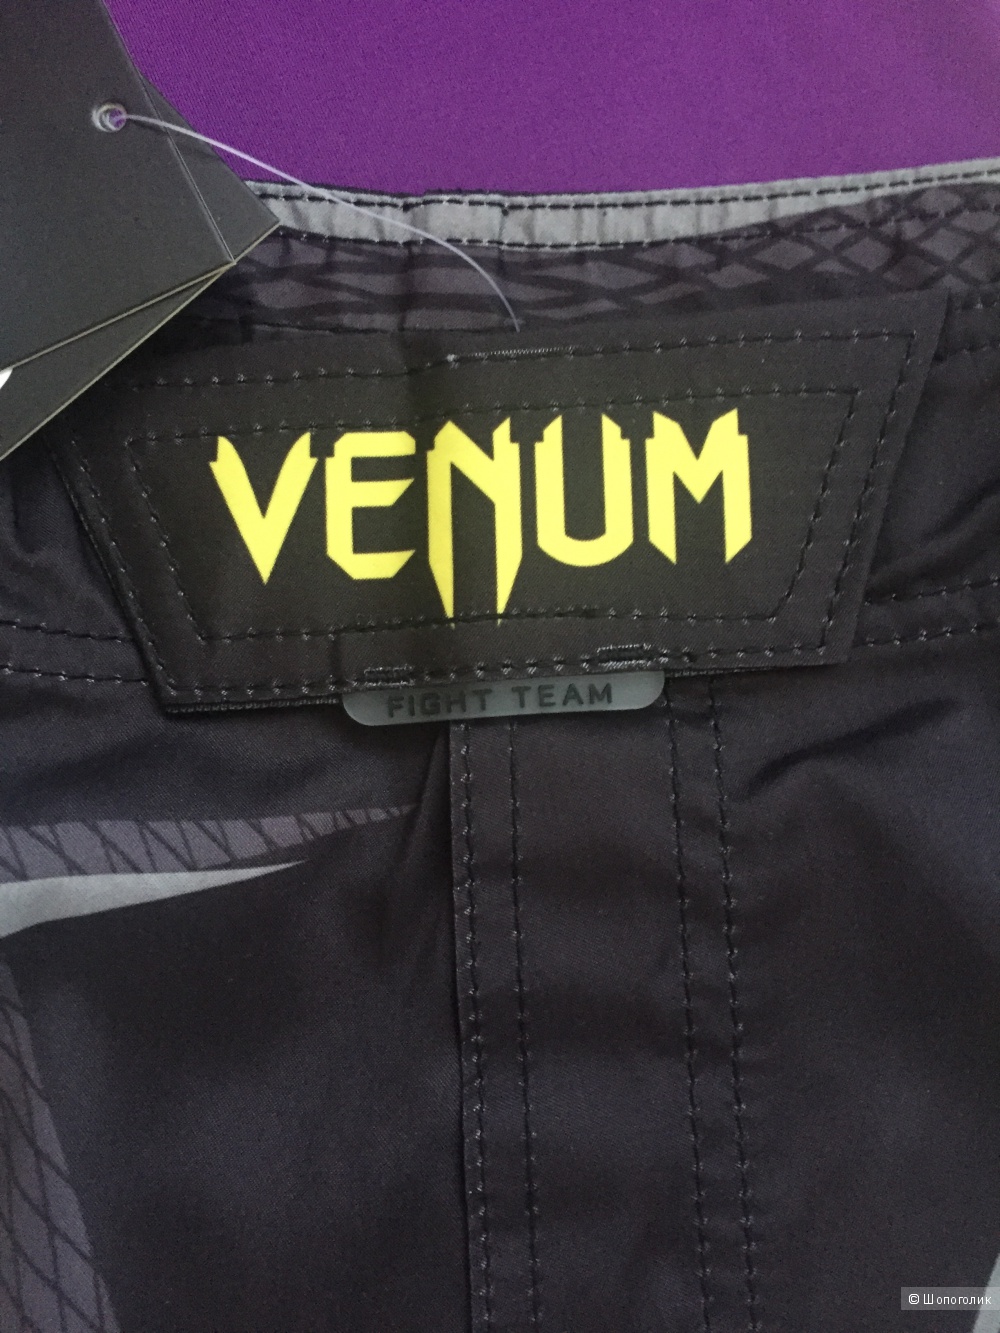 Мужской брендовый костюм для спорта VENUM. Размер L (на Российский 52-54)